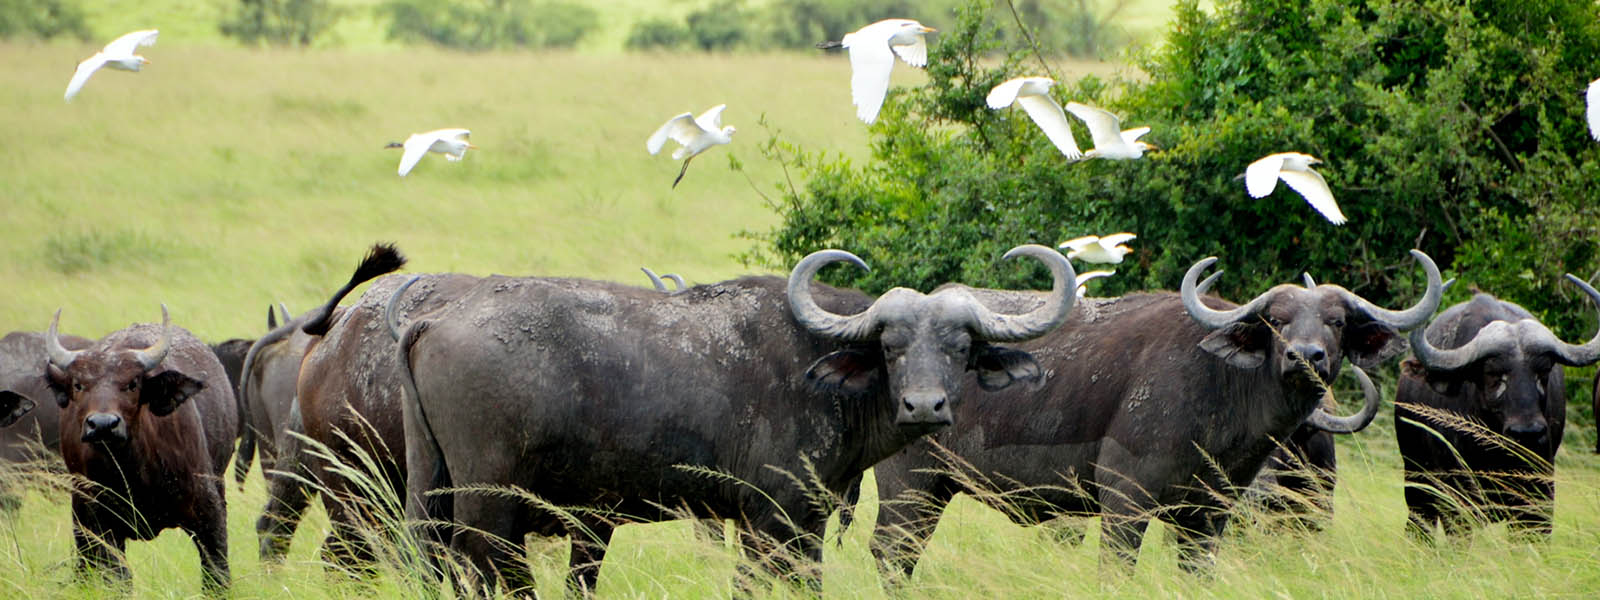 Uganda Wildlife Safari & Gorilla Trekking